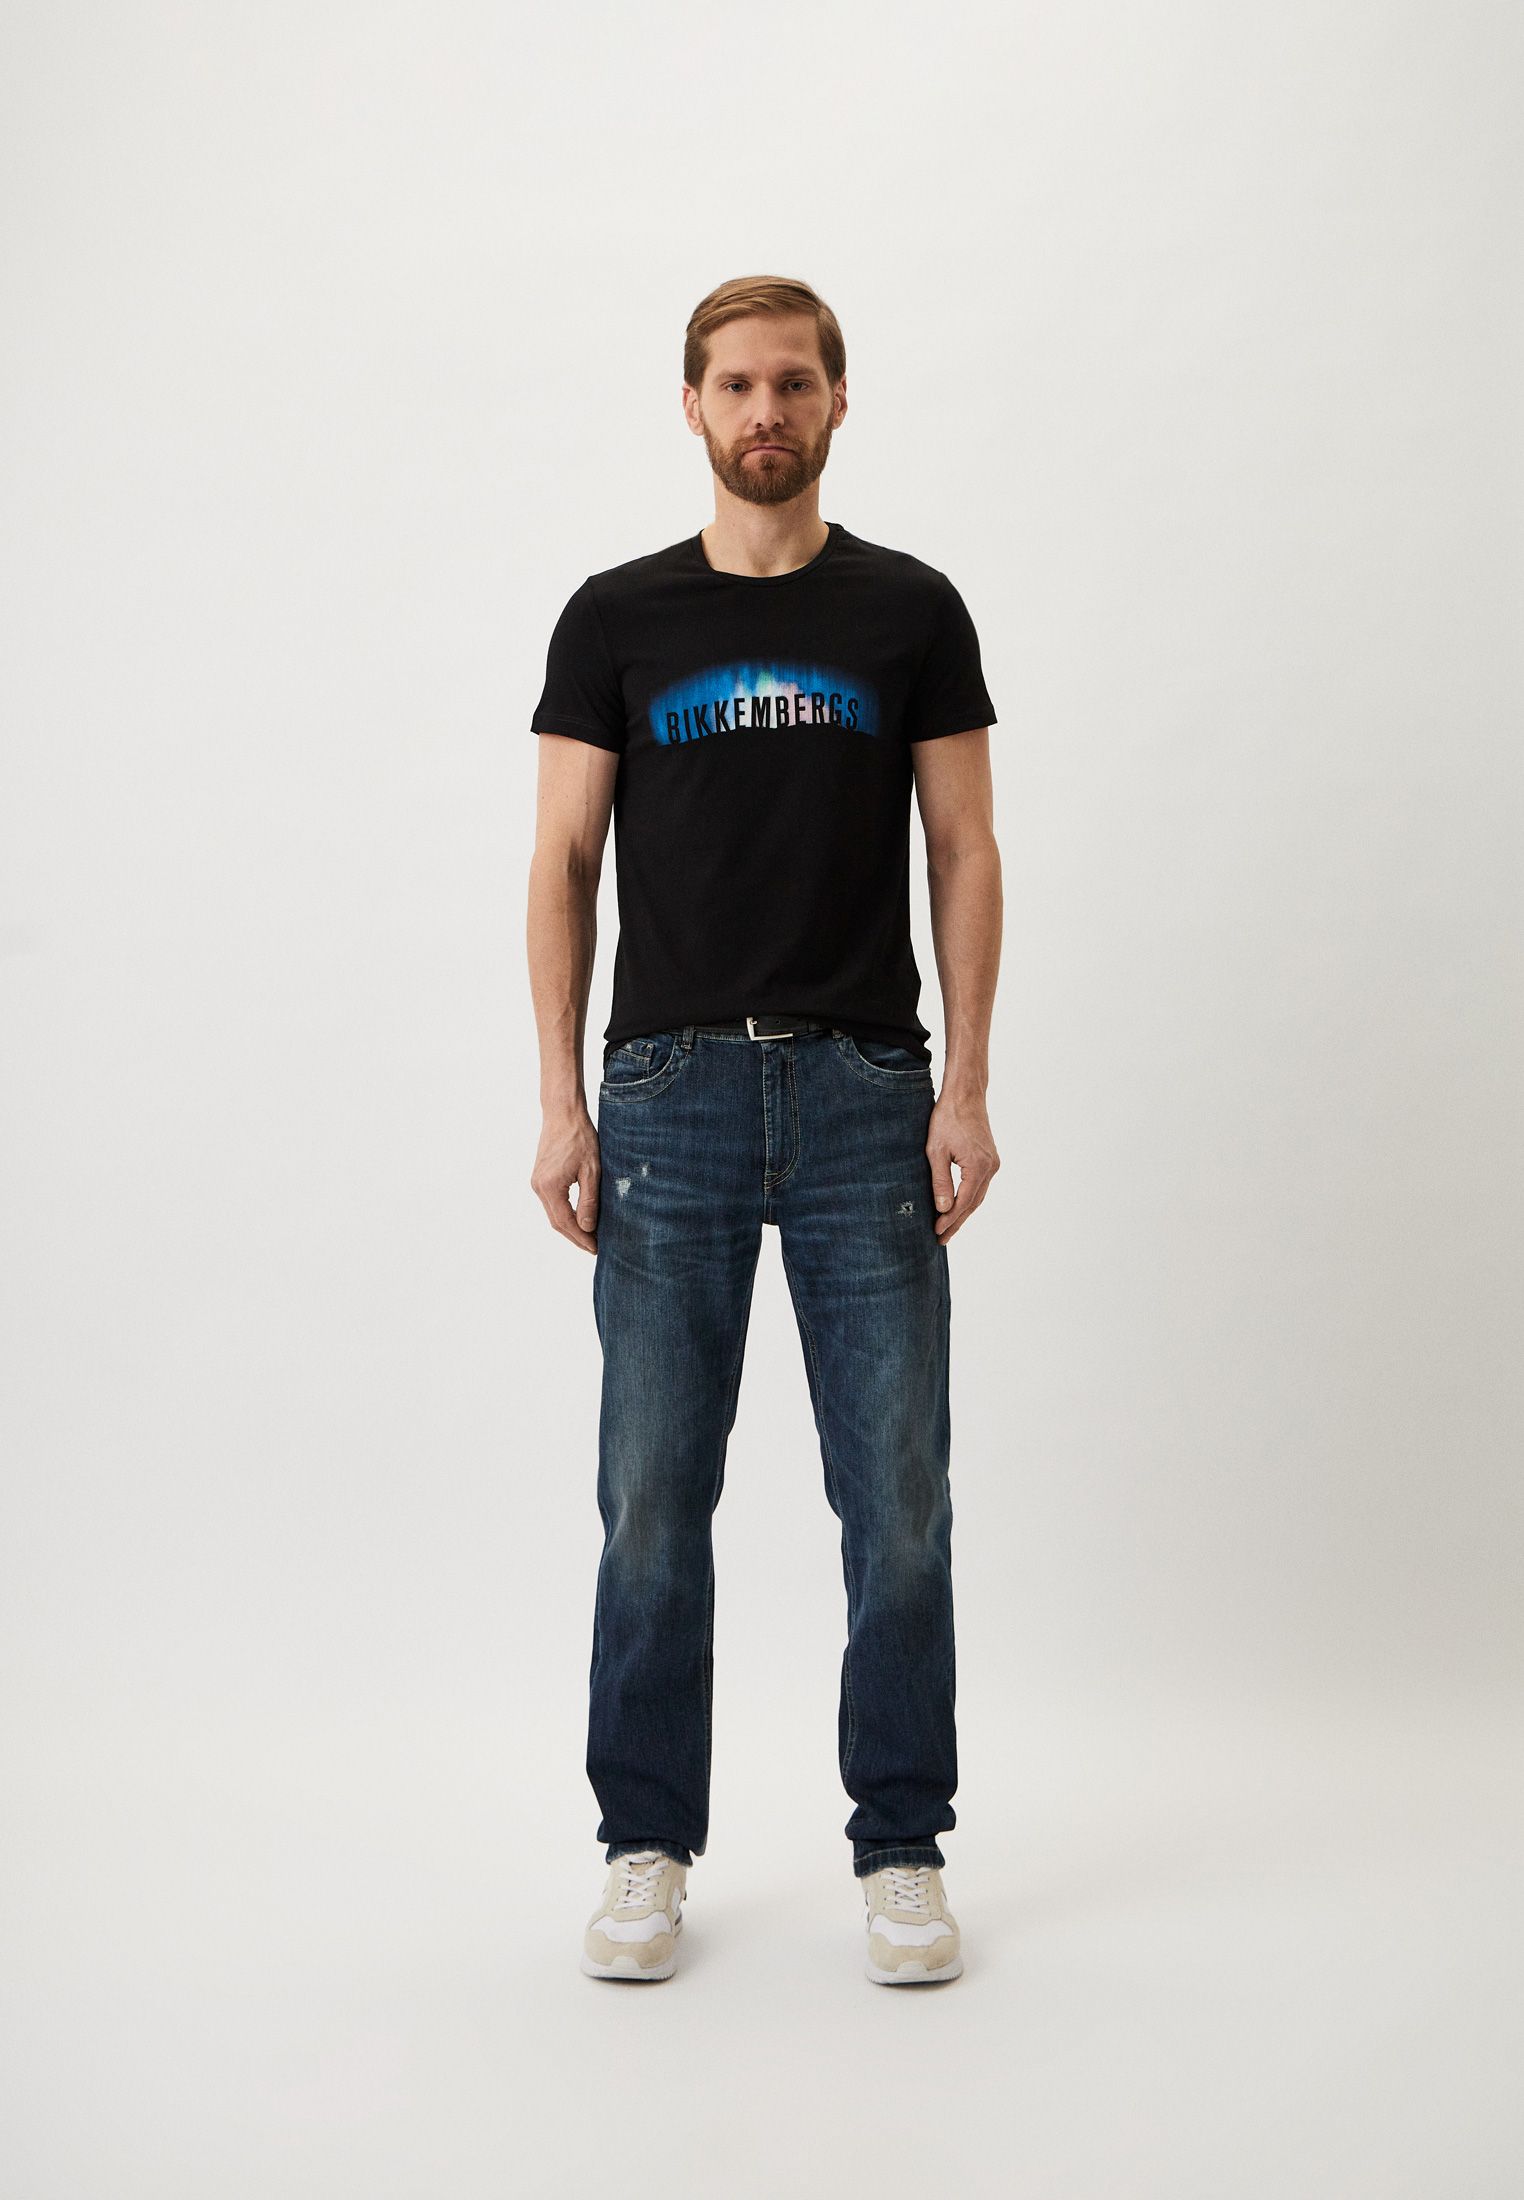 Мужская футболка Bikkembergs (Биккембергс) BMT0029K0002: изображение 2